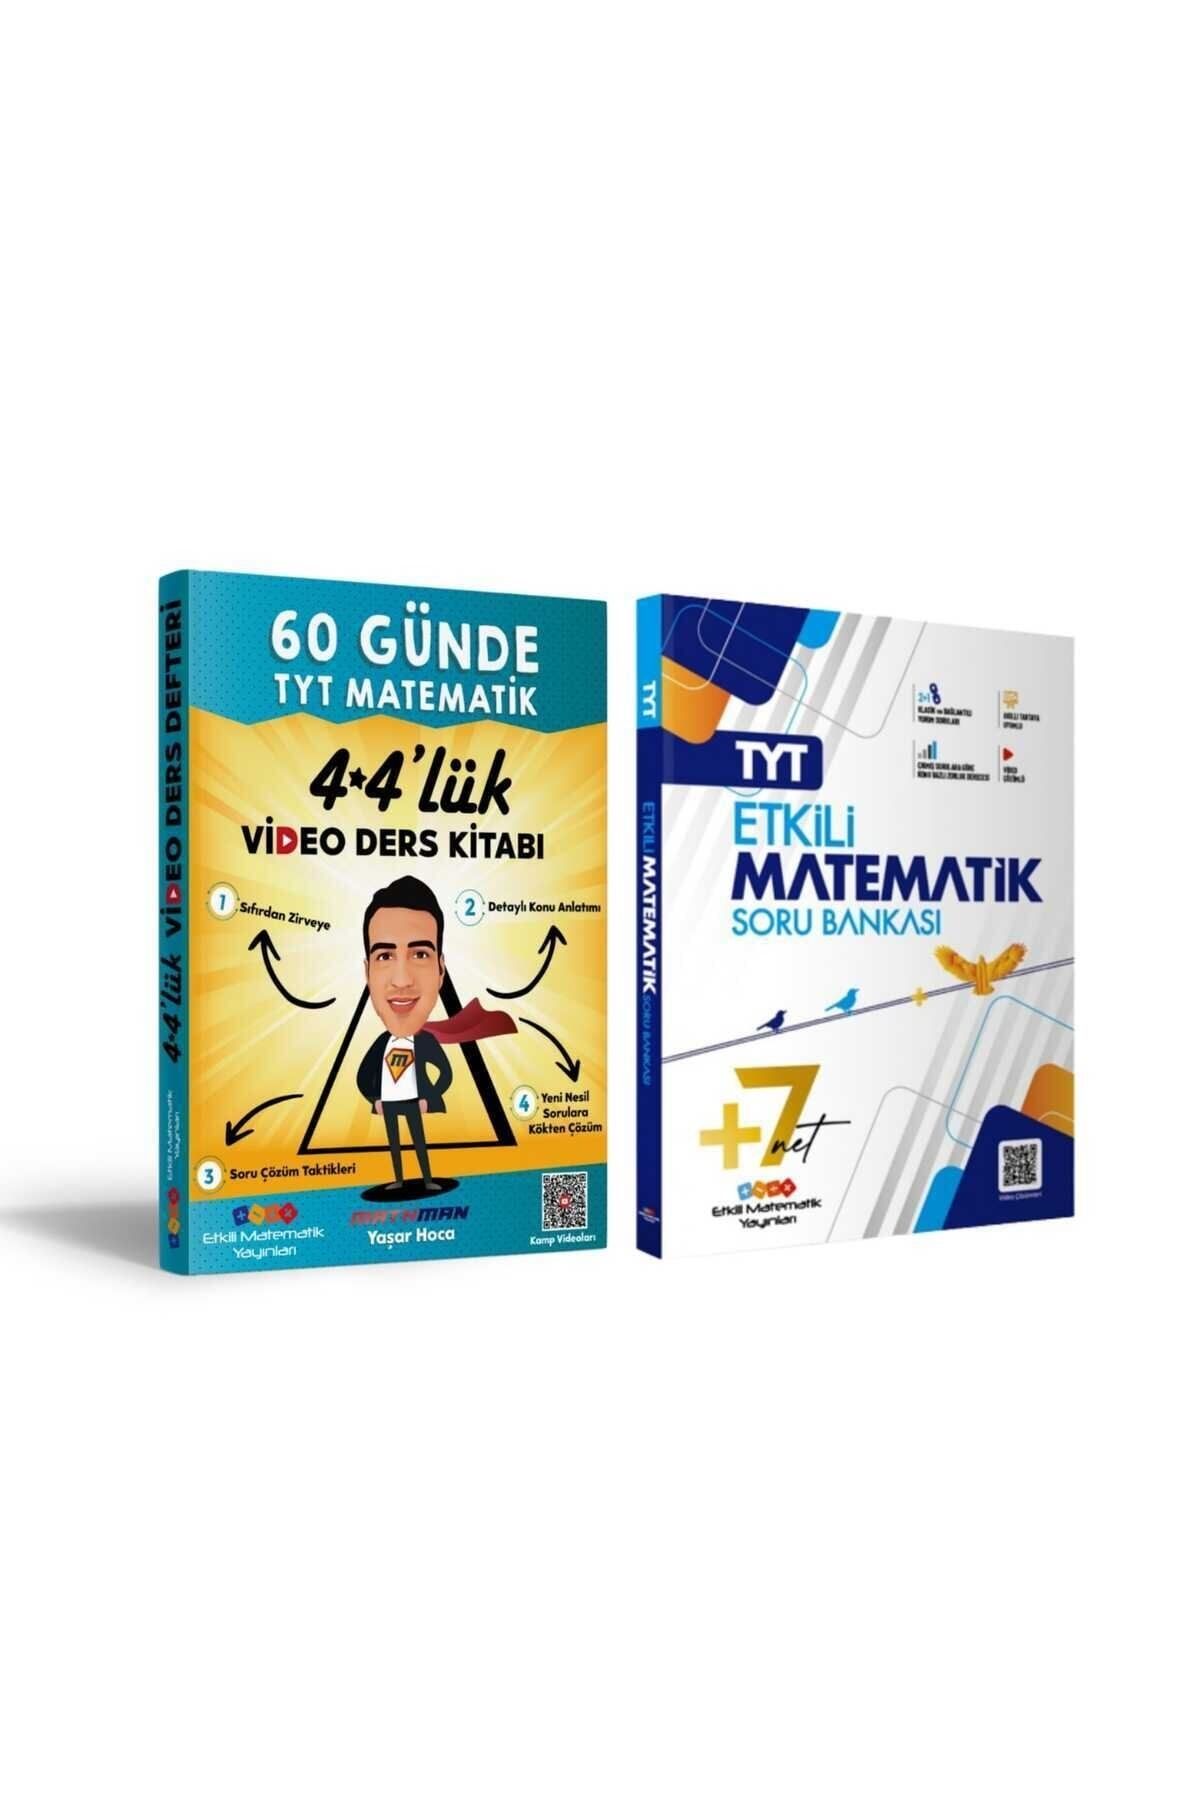 Etkili Matematik TYT Etkili Matematik Soru Bankası ve Yaşar hoca Mathman 4 4 lük Video Ders Kitabı